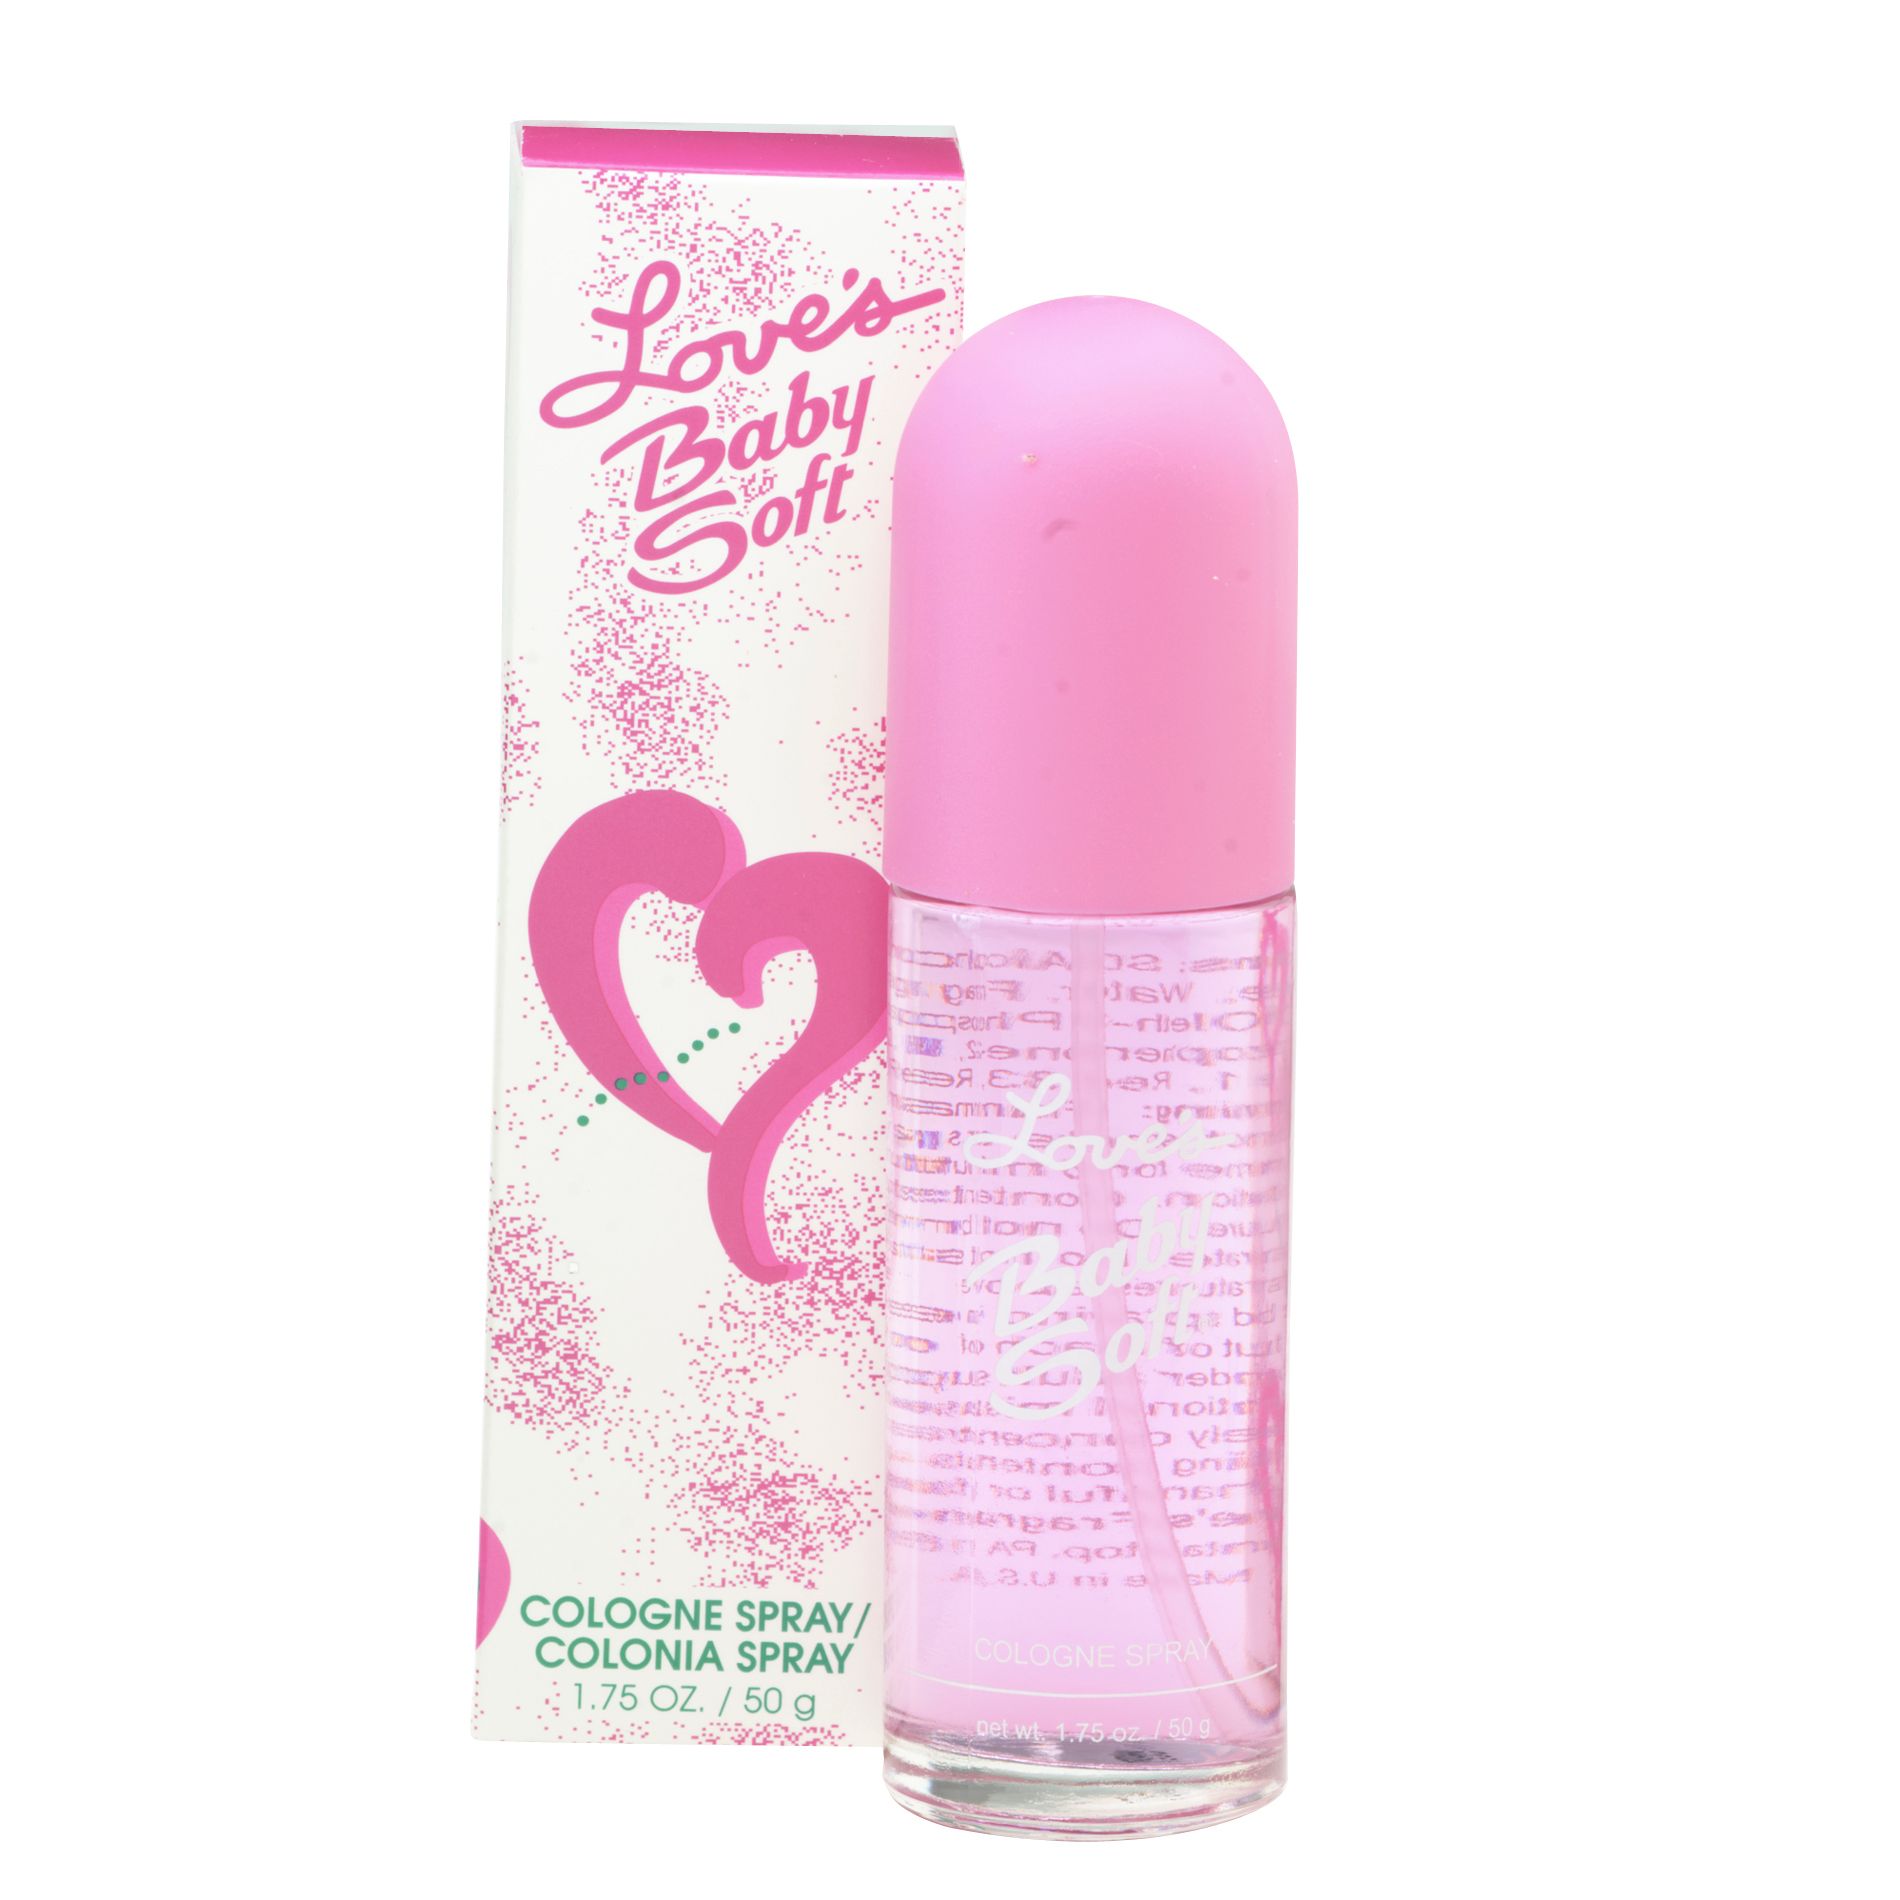 Love's Baby Soft 1.75 oz. Cologne Spray